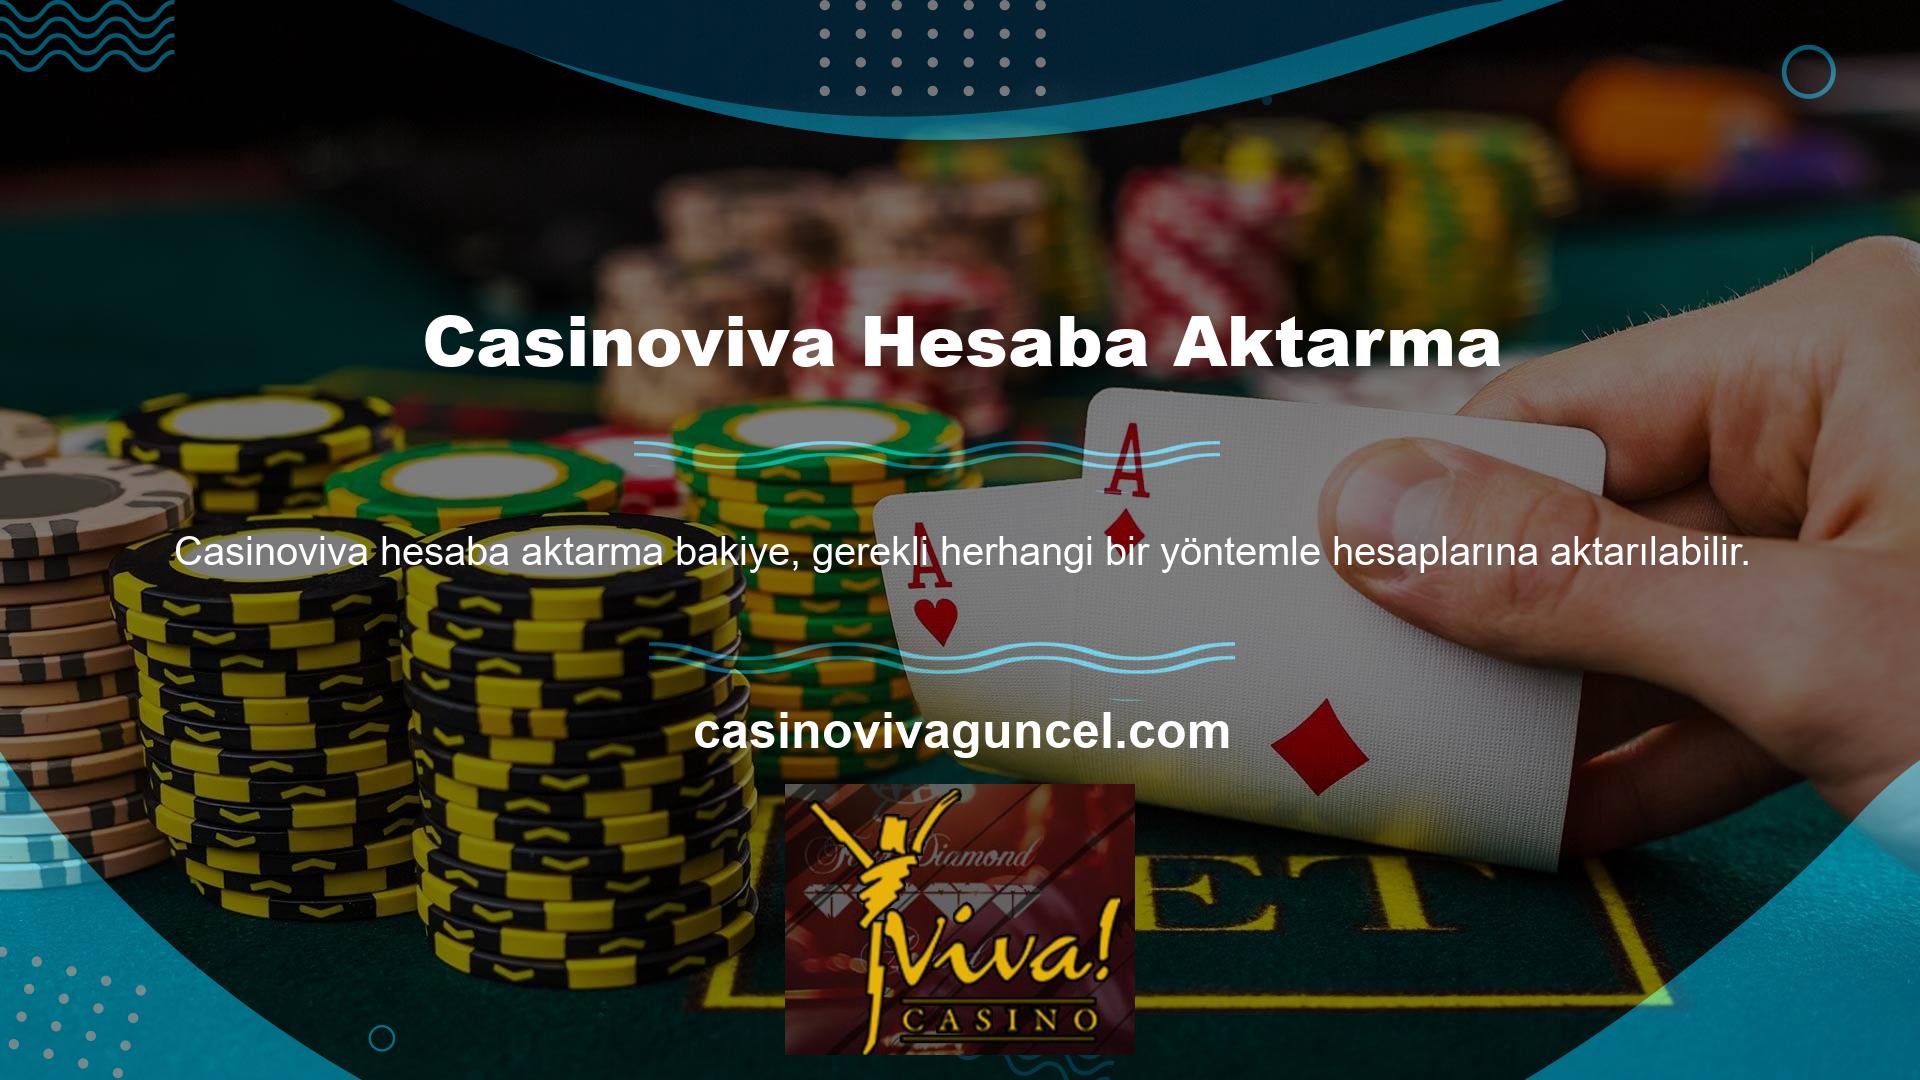 Ücretsiz bahislere izin veren yalnızca birkaç site var ancak Casinoviva bahisleriyle ilgili hala şikâyetler var